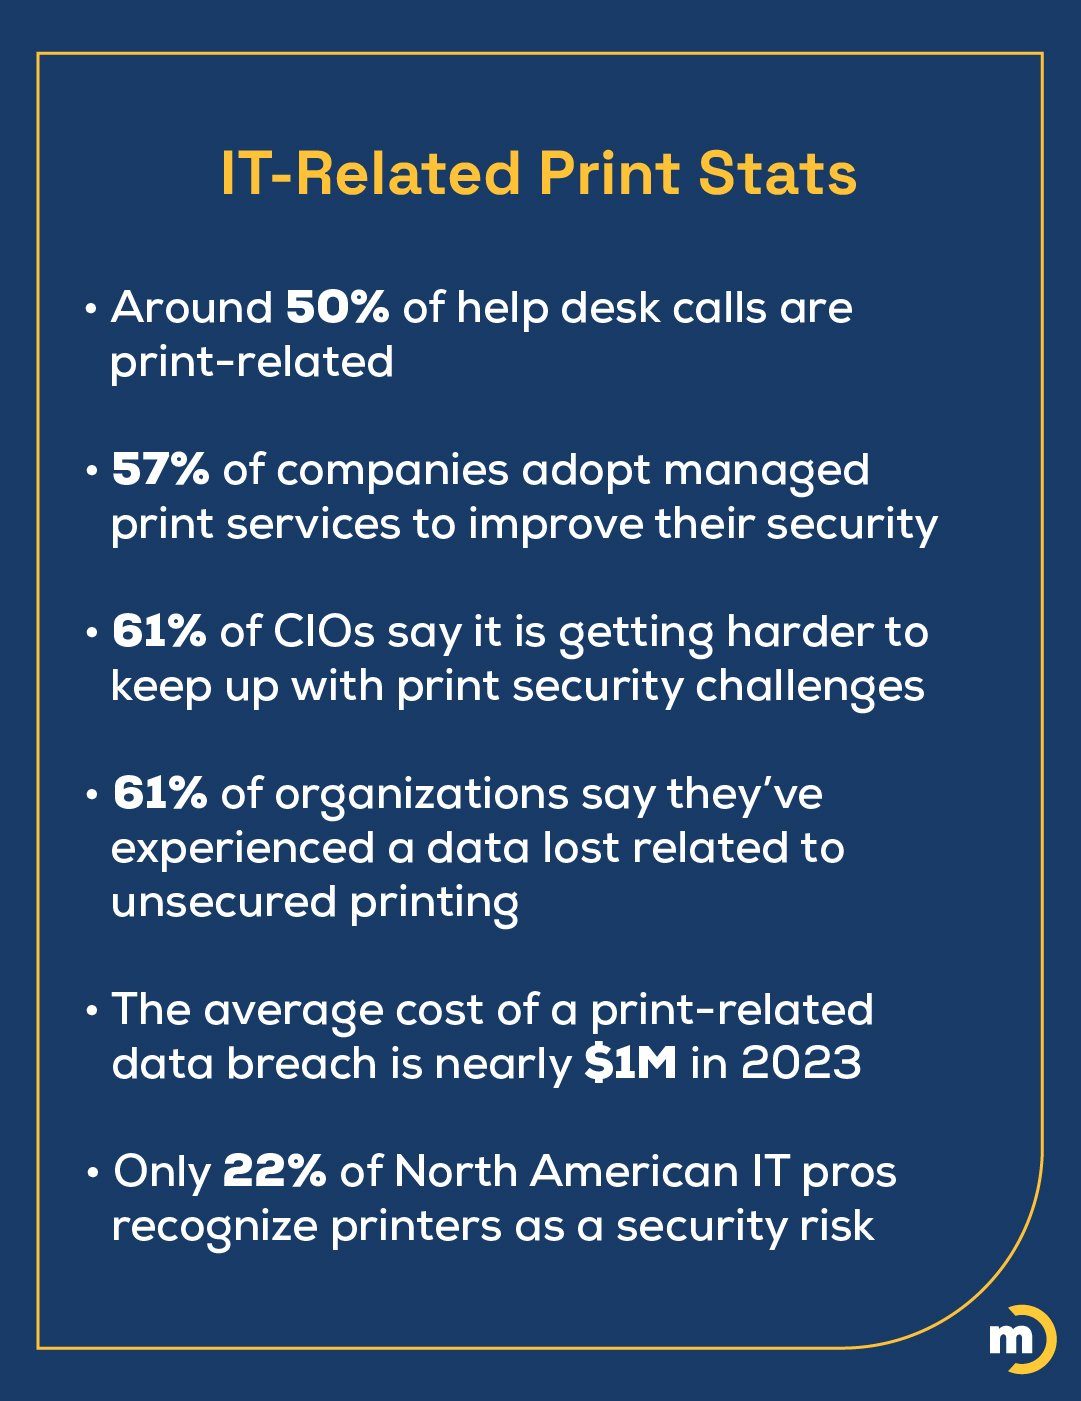 IT Print stats